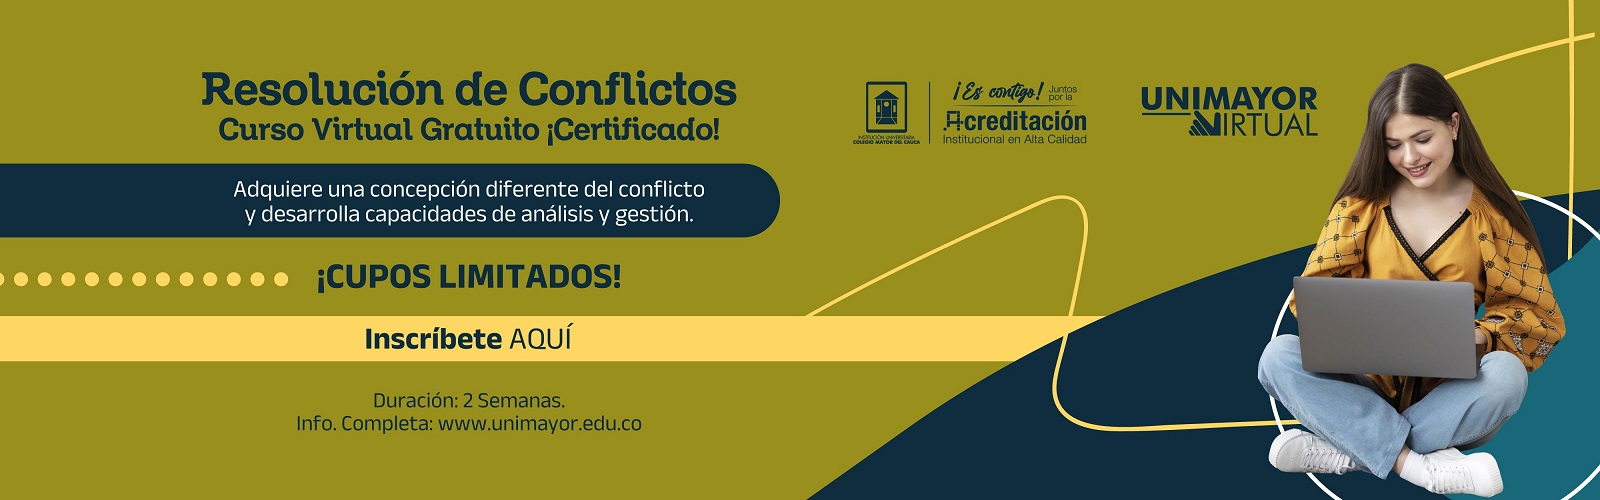 Banner_MOOC_Resolucion_de_Conflictos